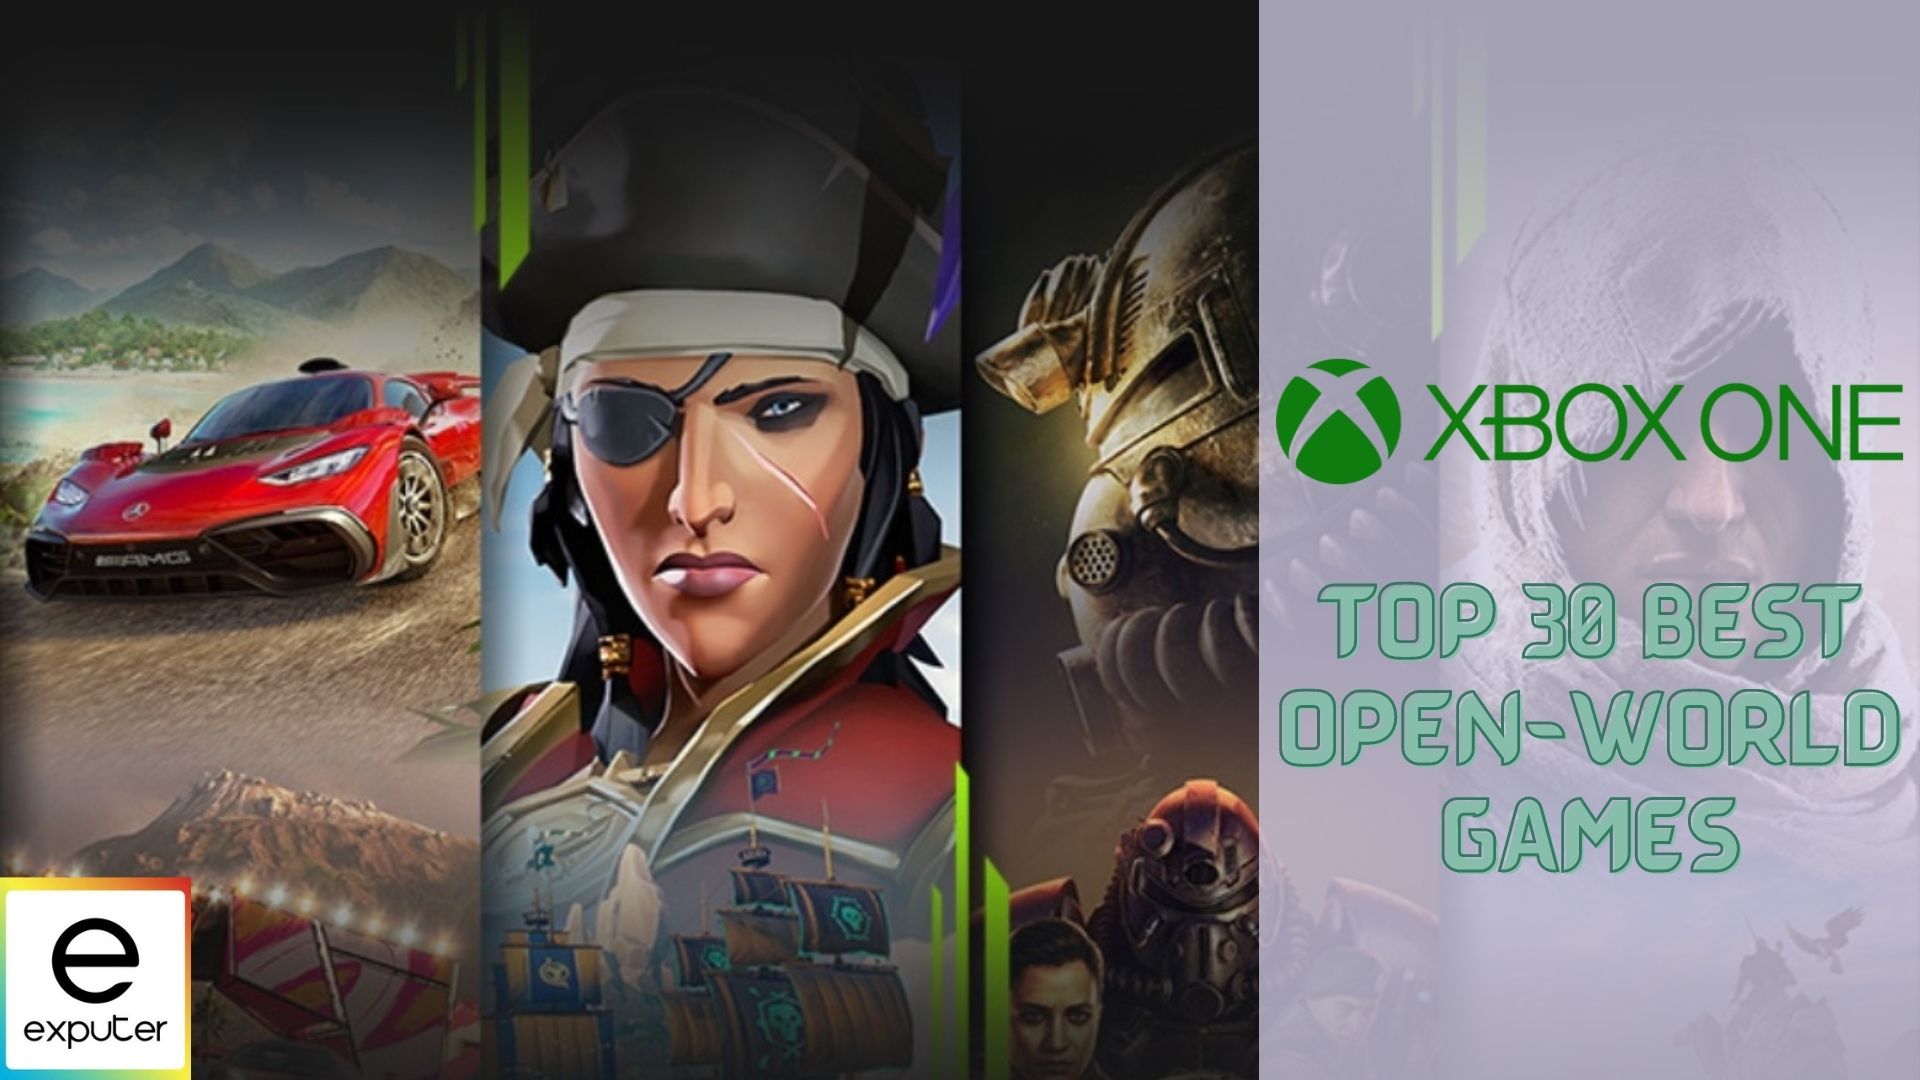 twist Lijken Afstudeeralbum 30 BEST Open World Games For Xbox One - eXputer.com